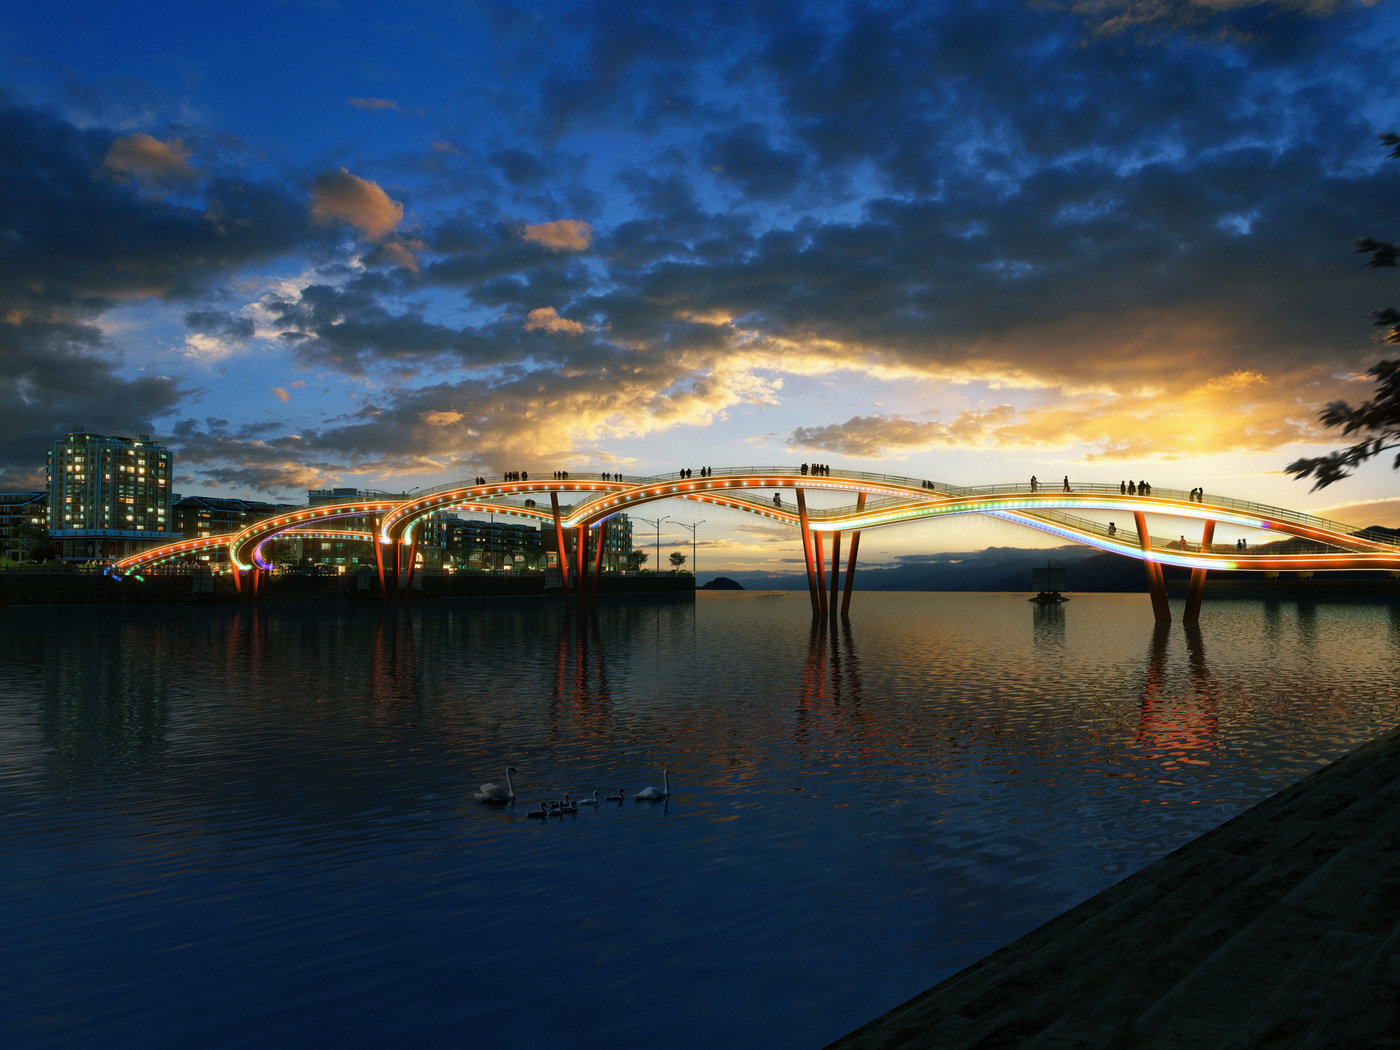 Xinjin County Landscape Bridge